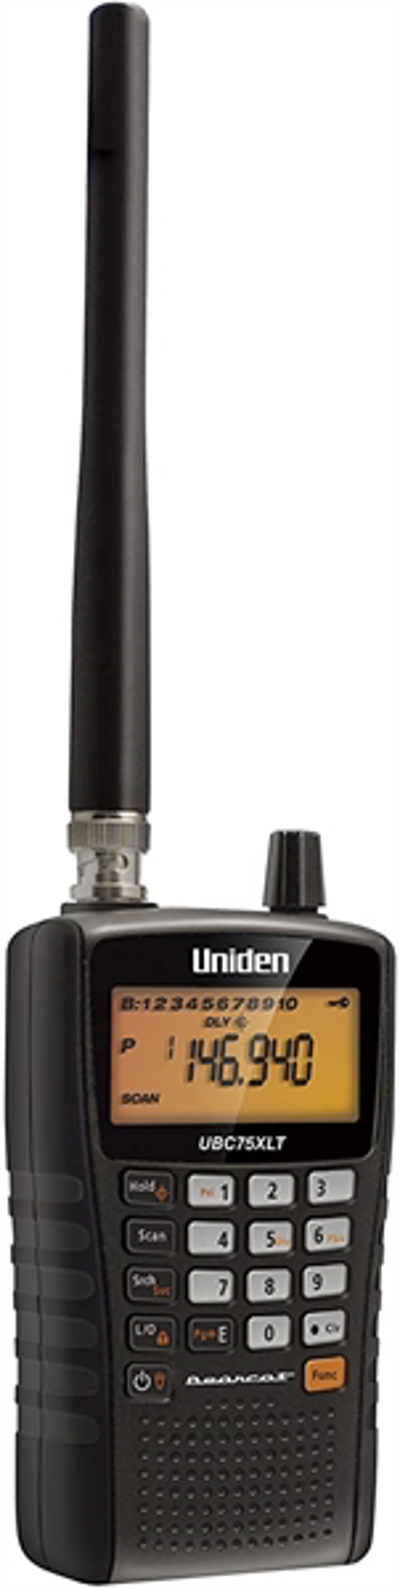 Uniden UBC75XLT, receptor scanner portátil